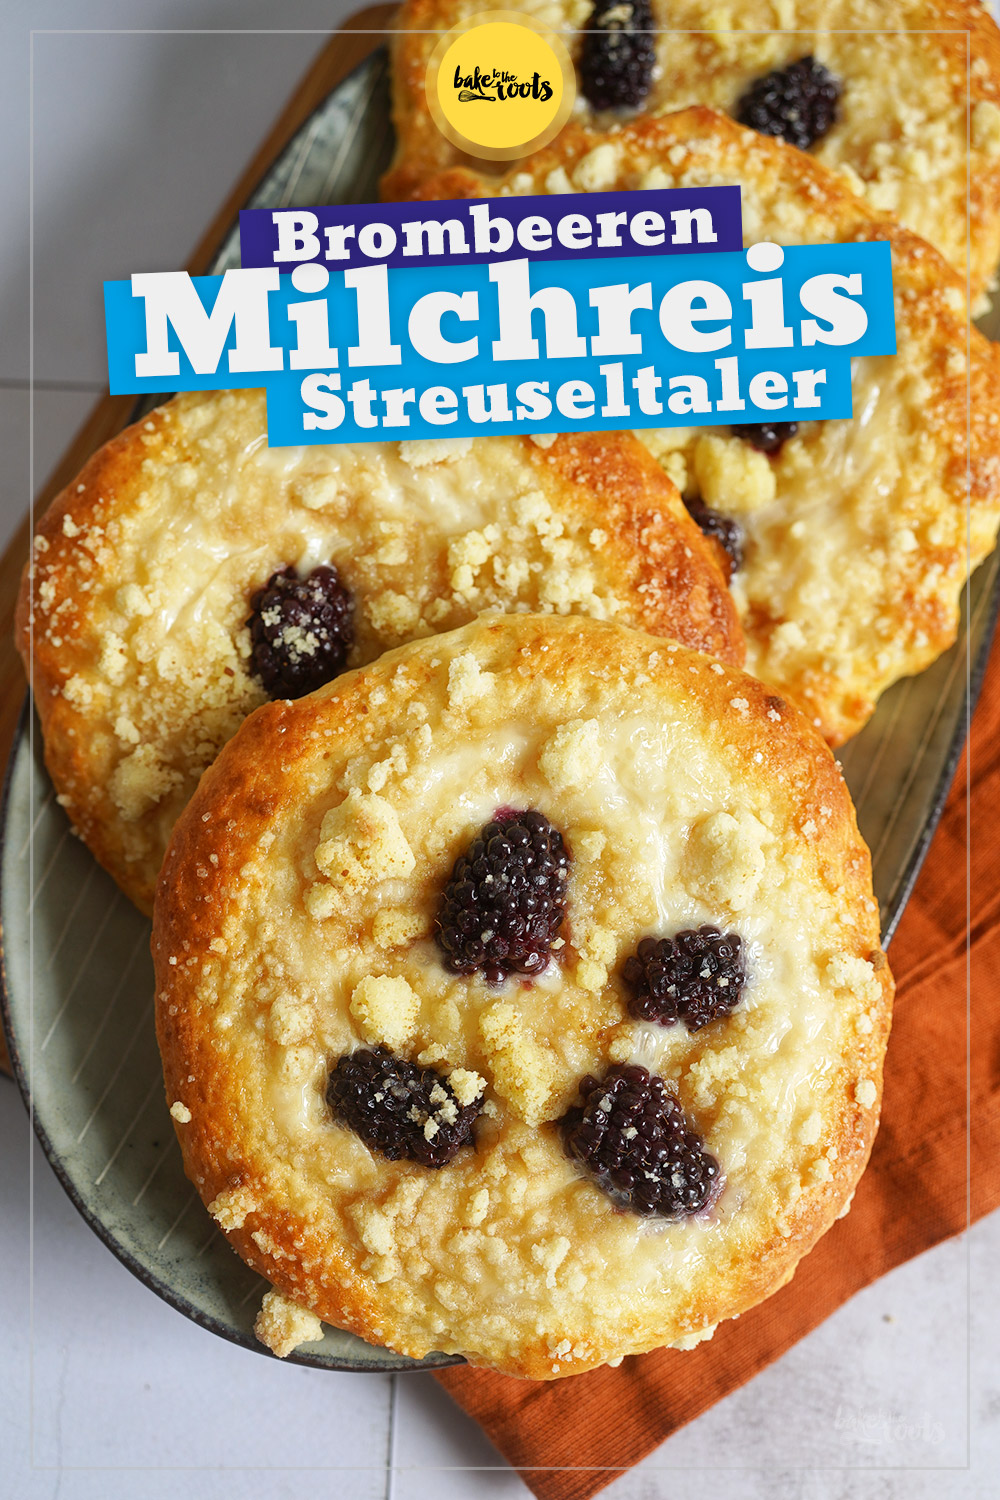 Milchreis Streuseltaler mit Brombeeren | Bake to the roots | Bake to ...